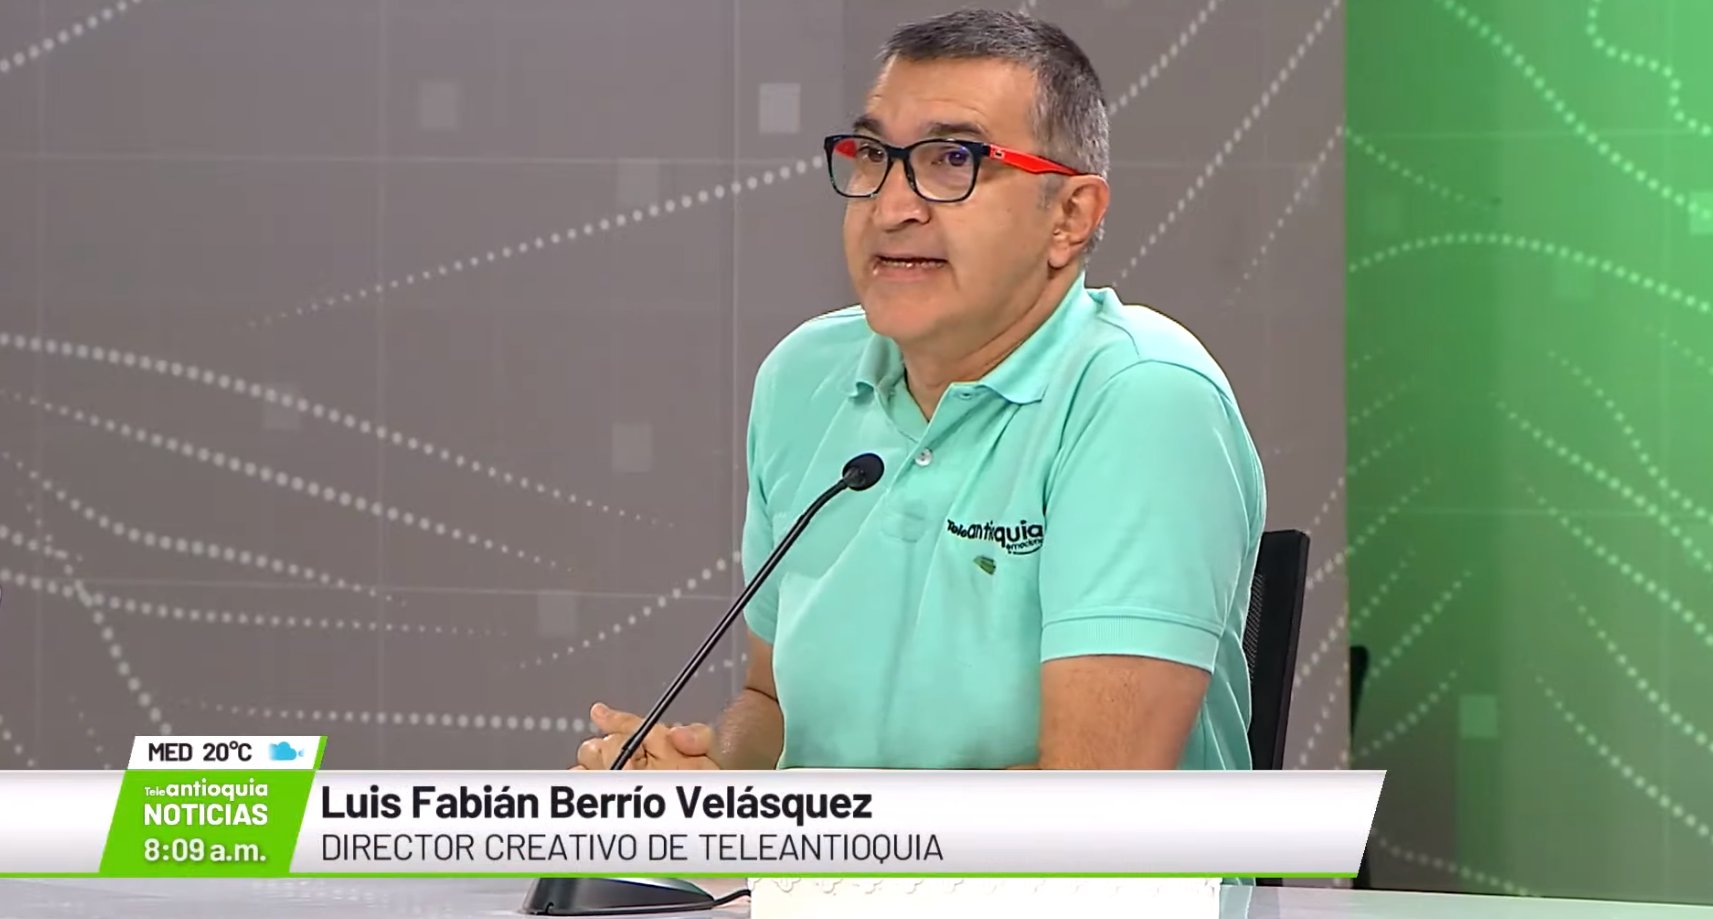 Luis Fabián Berrío Velásquez, director creativo de Teleantioquia